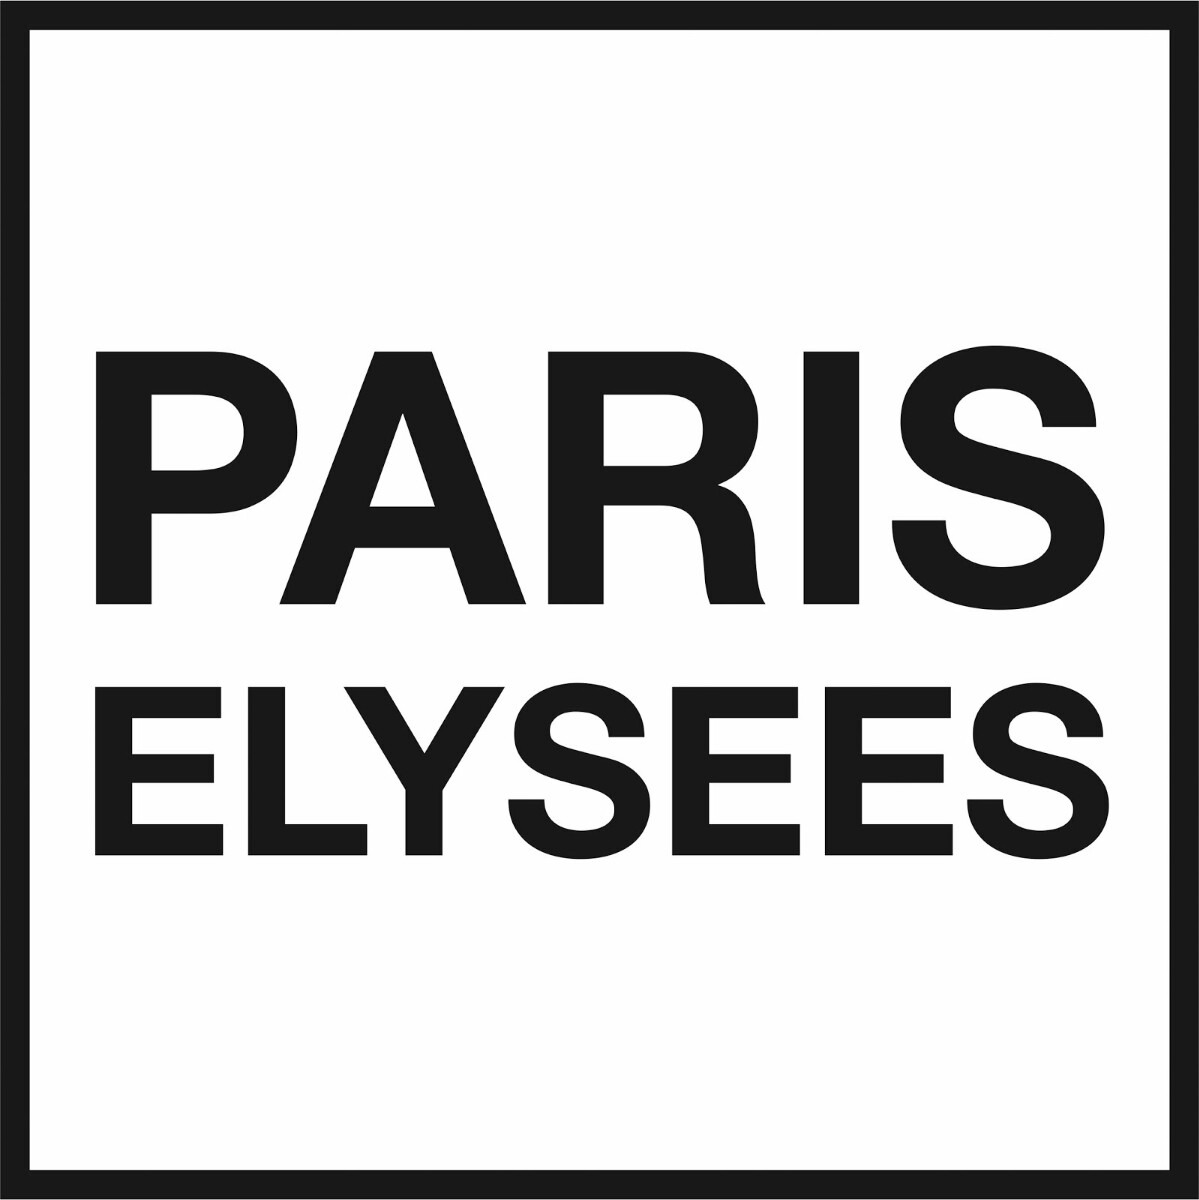 PARIS ELYSEES